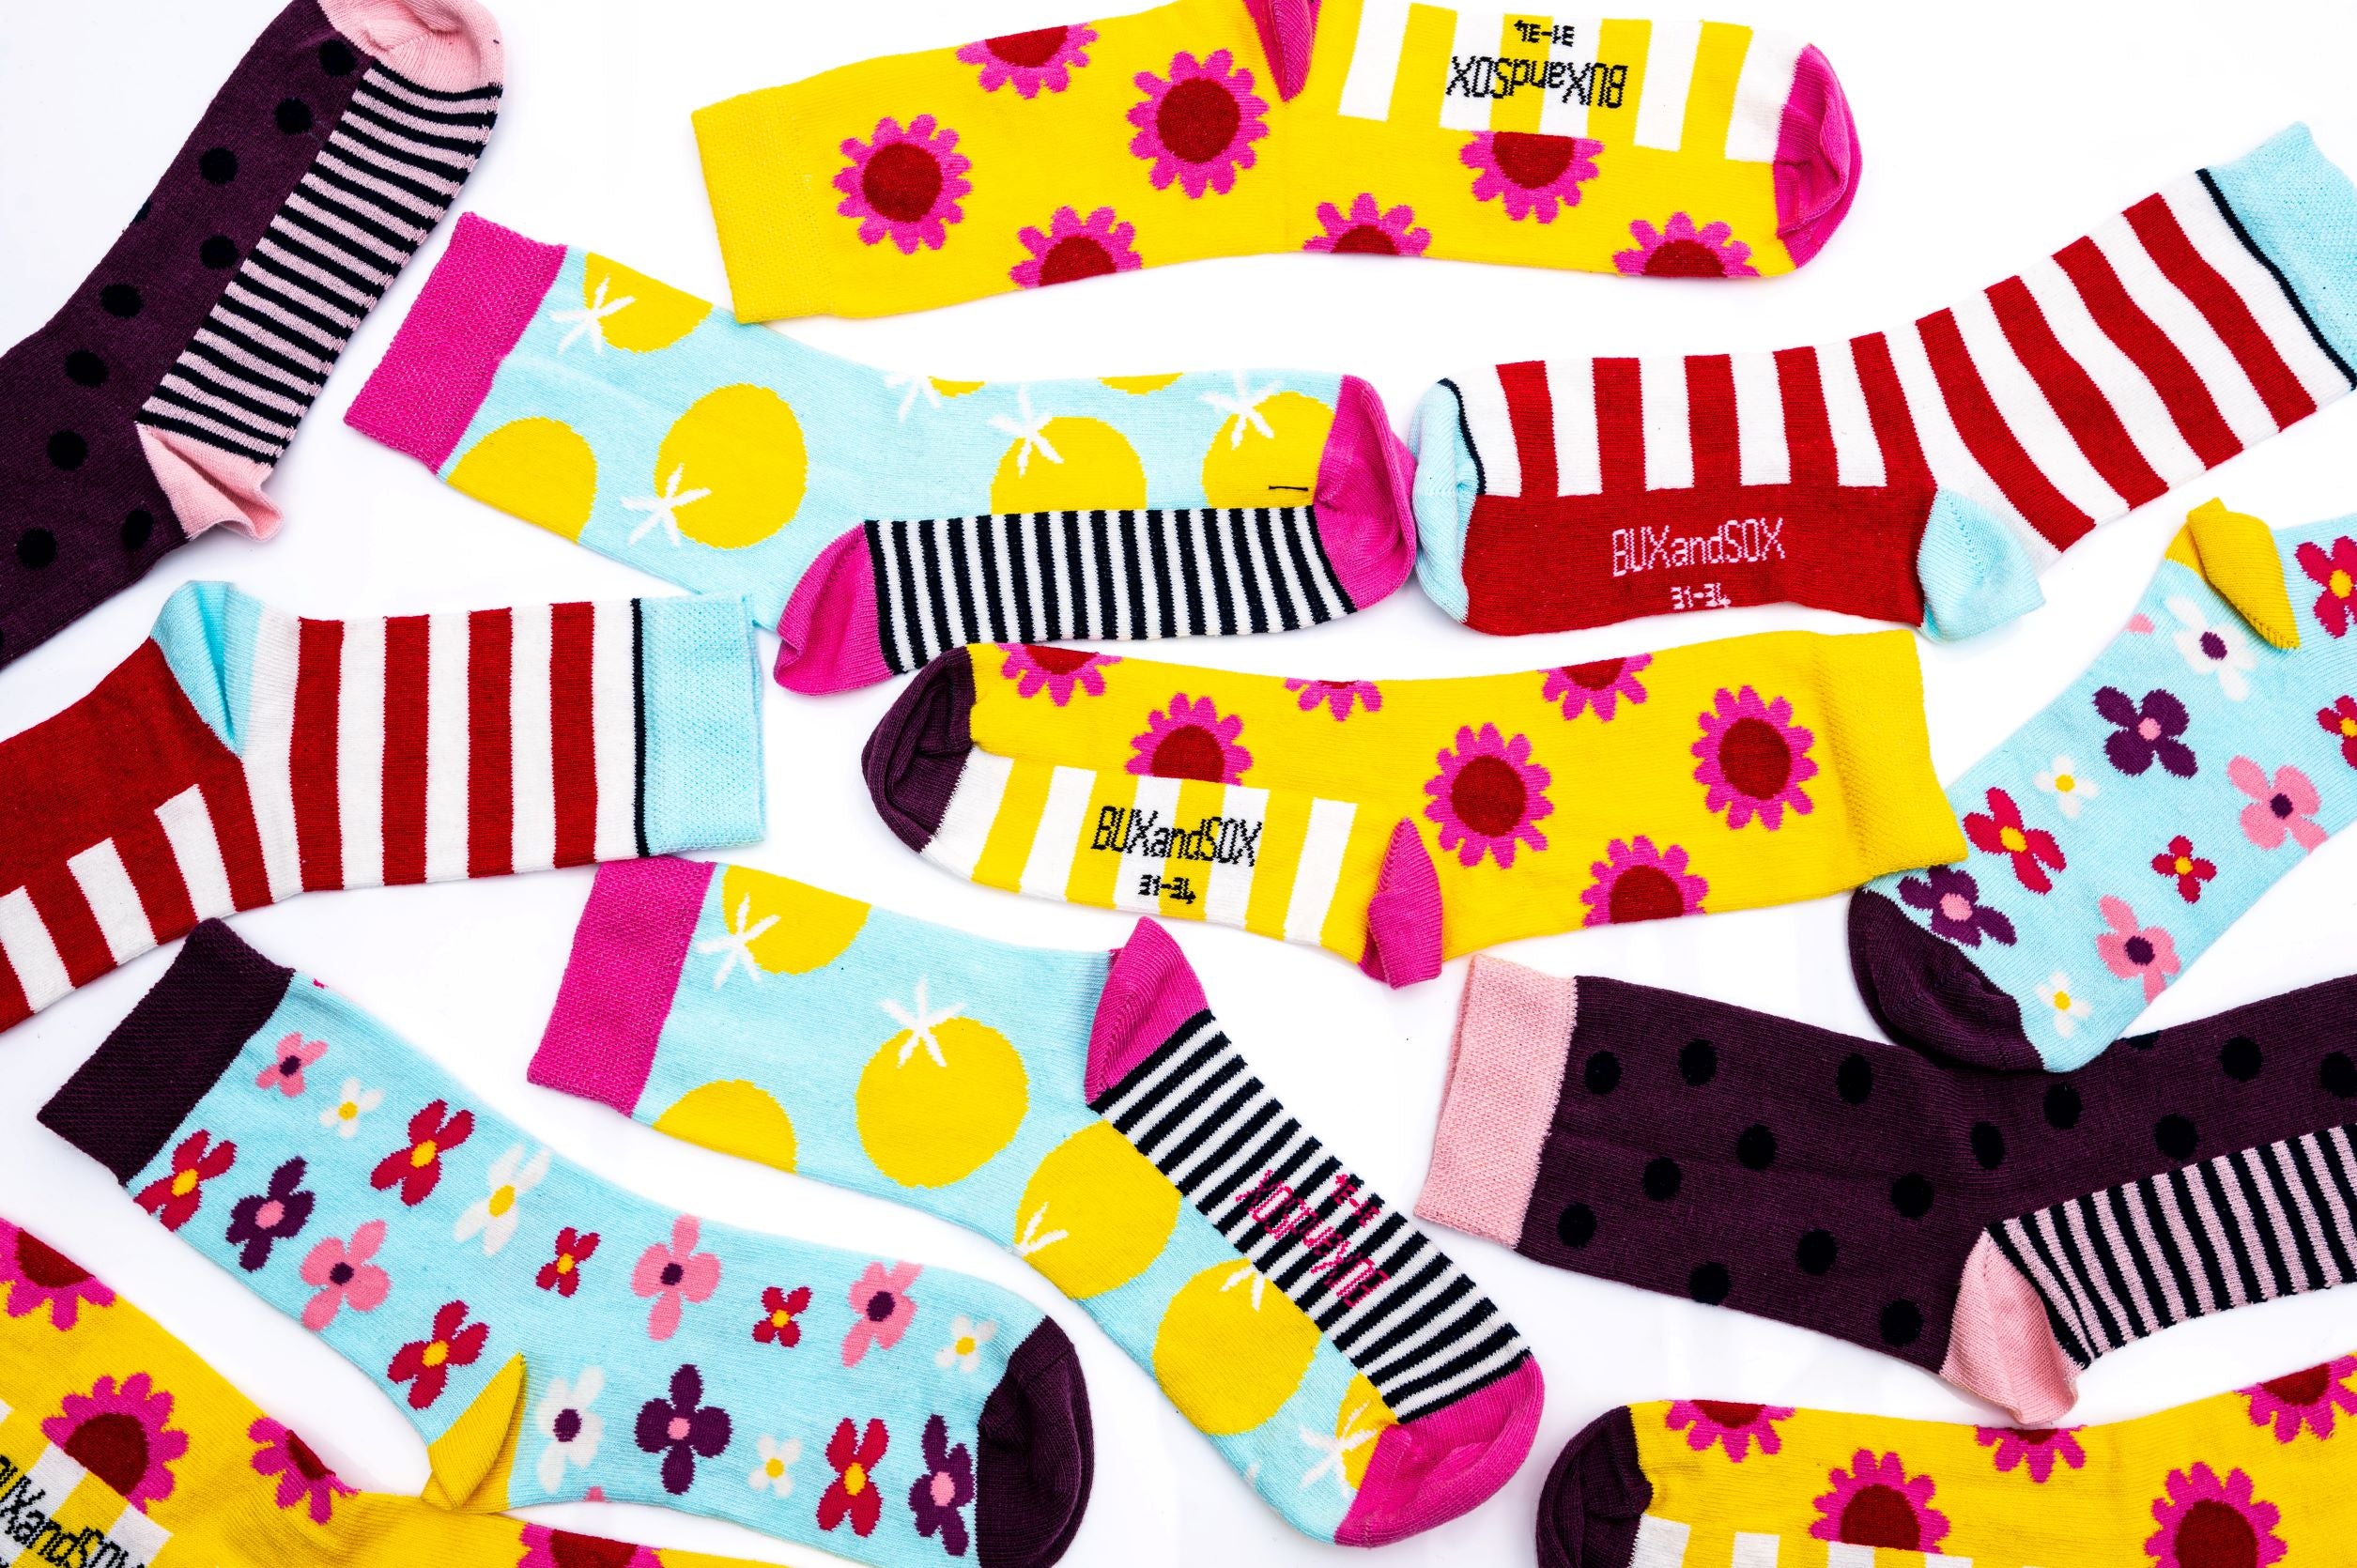 buxandsox.shop - sommerliche Mädchensocken in der 5-er Sockenbox kaufen